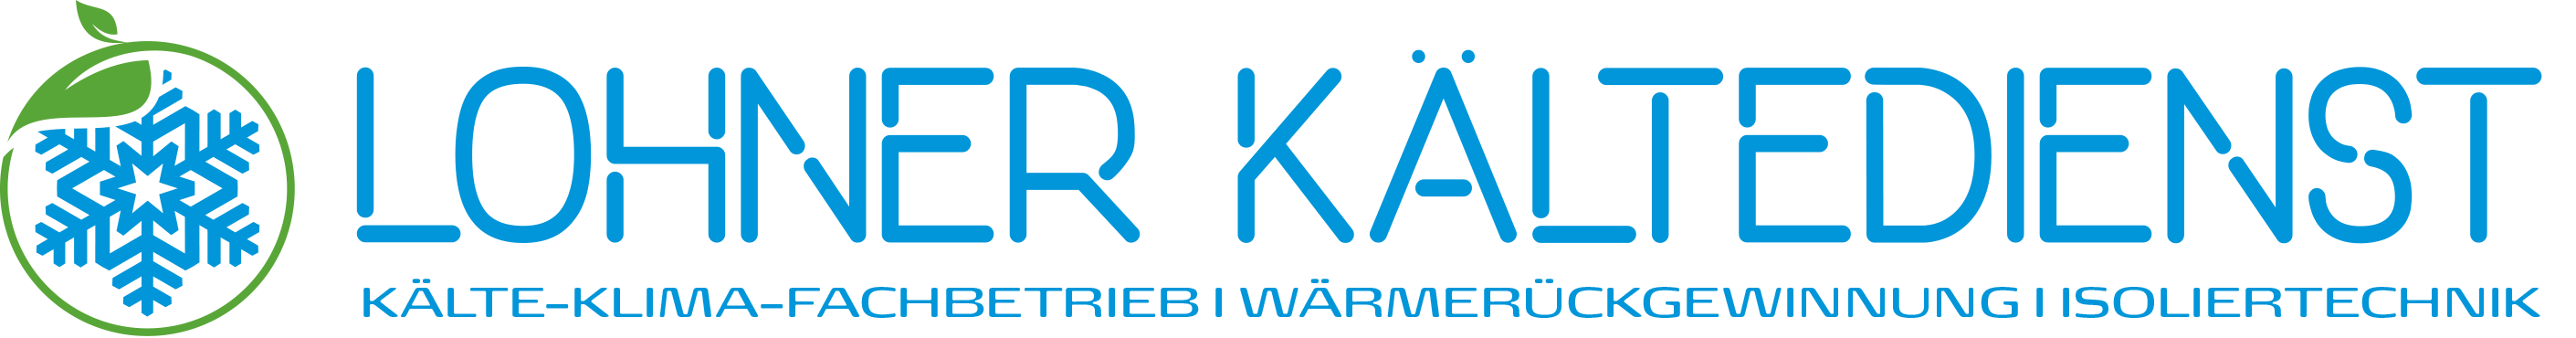 Lohner Kältedienst GmbH Logo